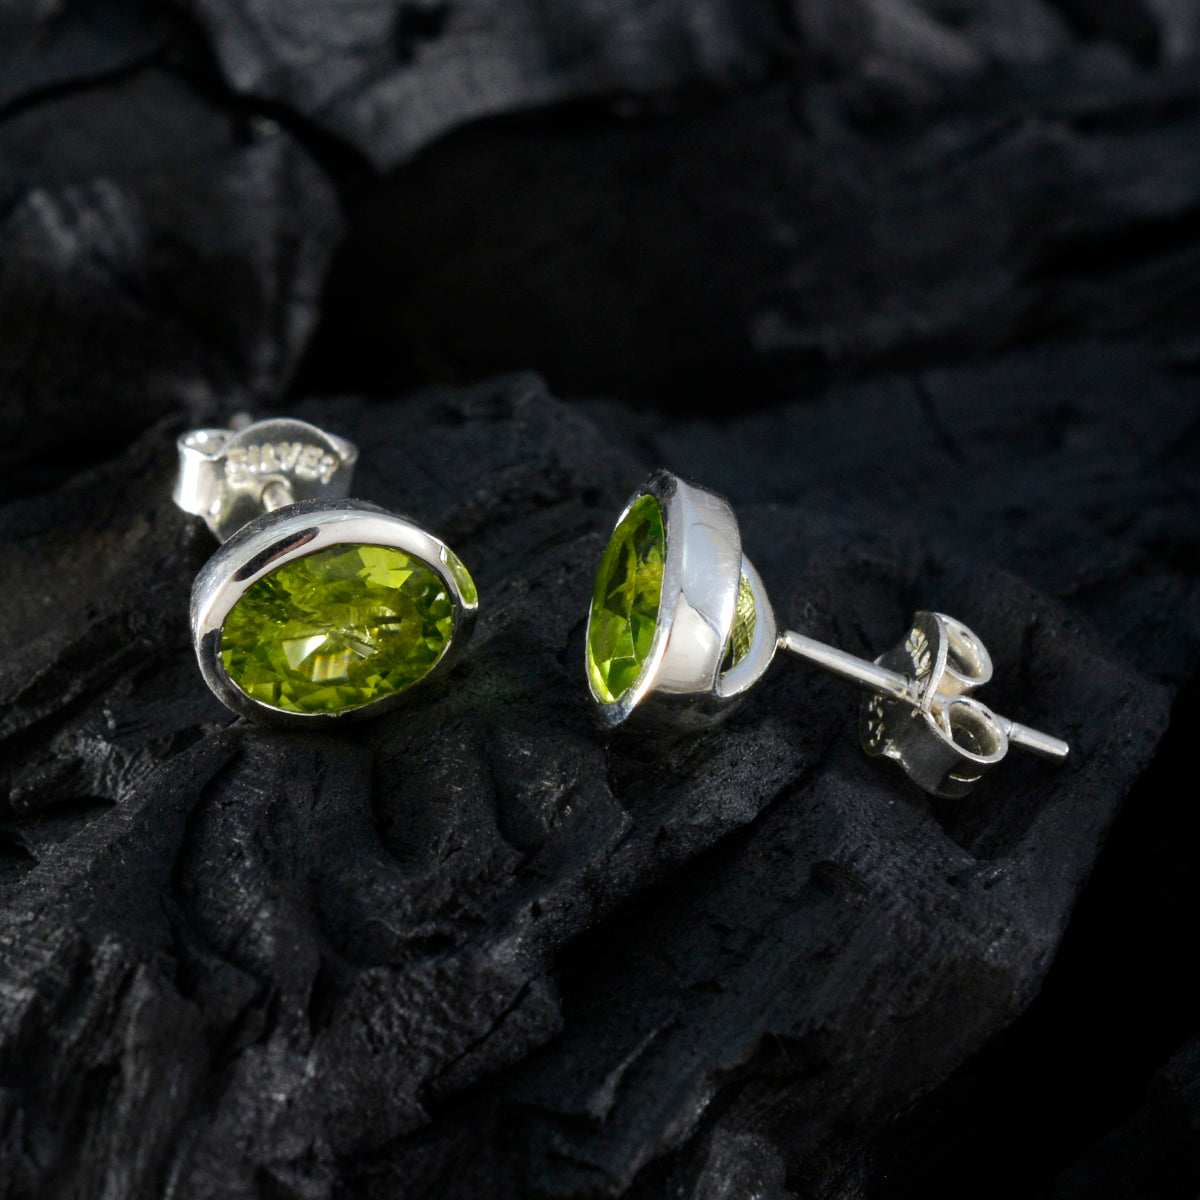 riyo välsmakande 925 sterling silver örhänge för demoiselle peridot örhänge infattning grönt örhänge örhänge